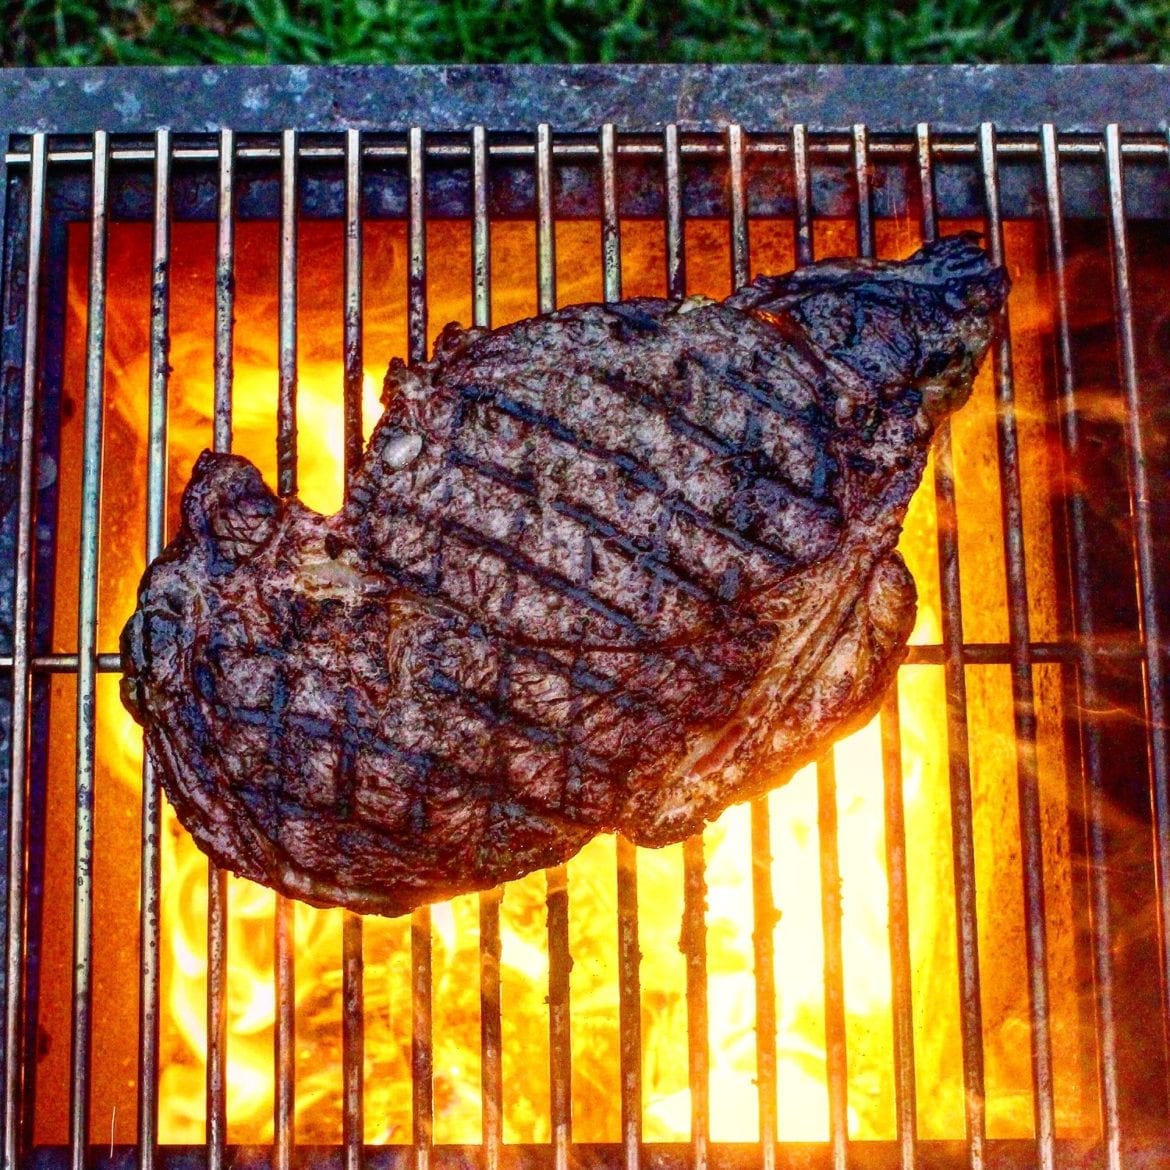 steak over the coals